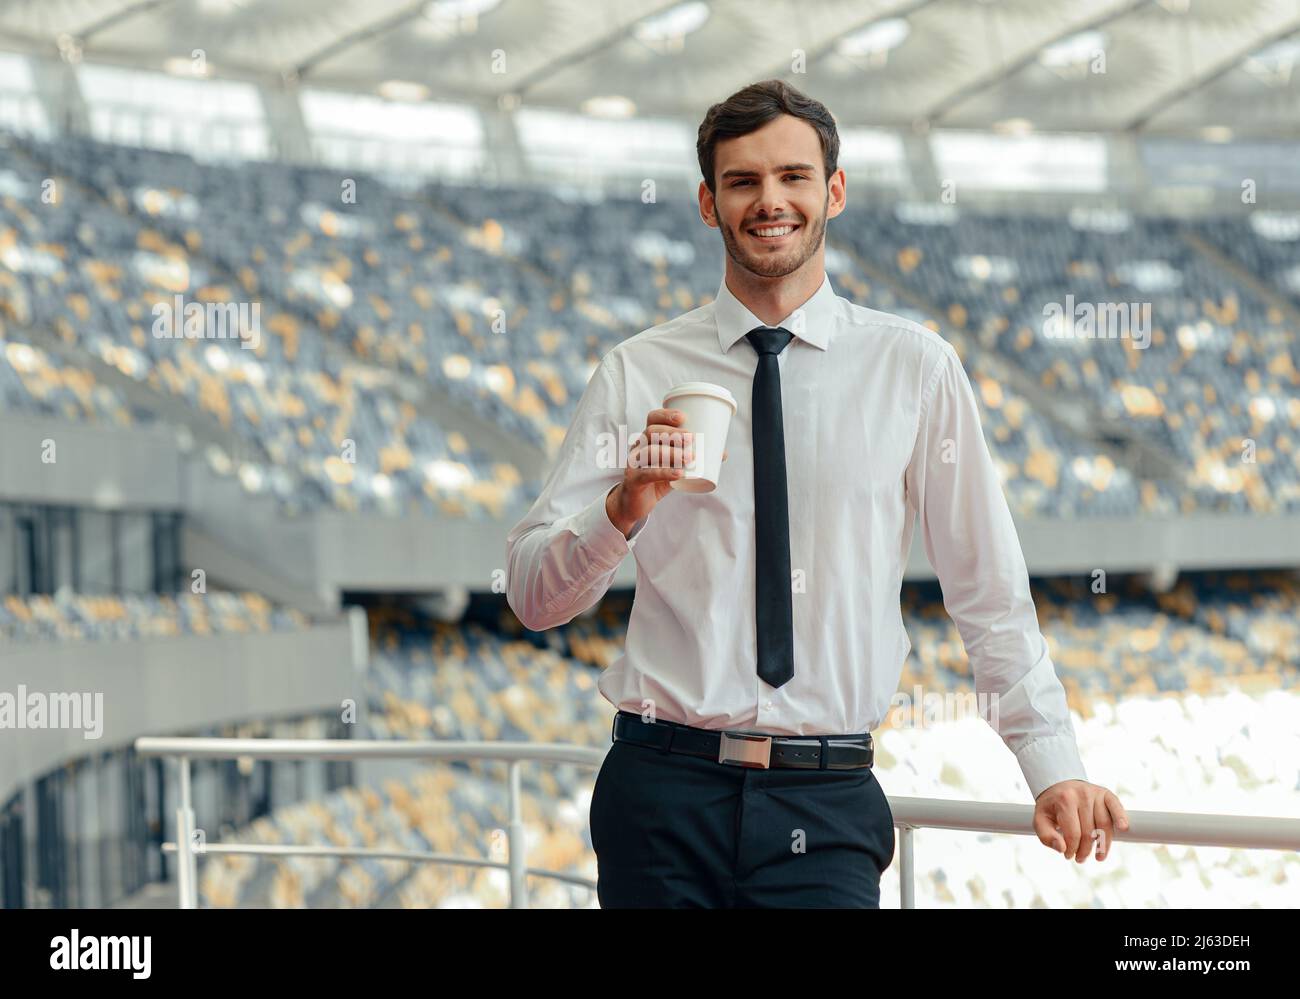 Lächelnder Unternehmer, der Kaffee trinkt, während er auf der Aussichtsplattform des Stadions steht Stockfoto